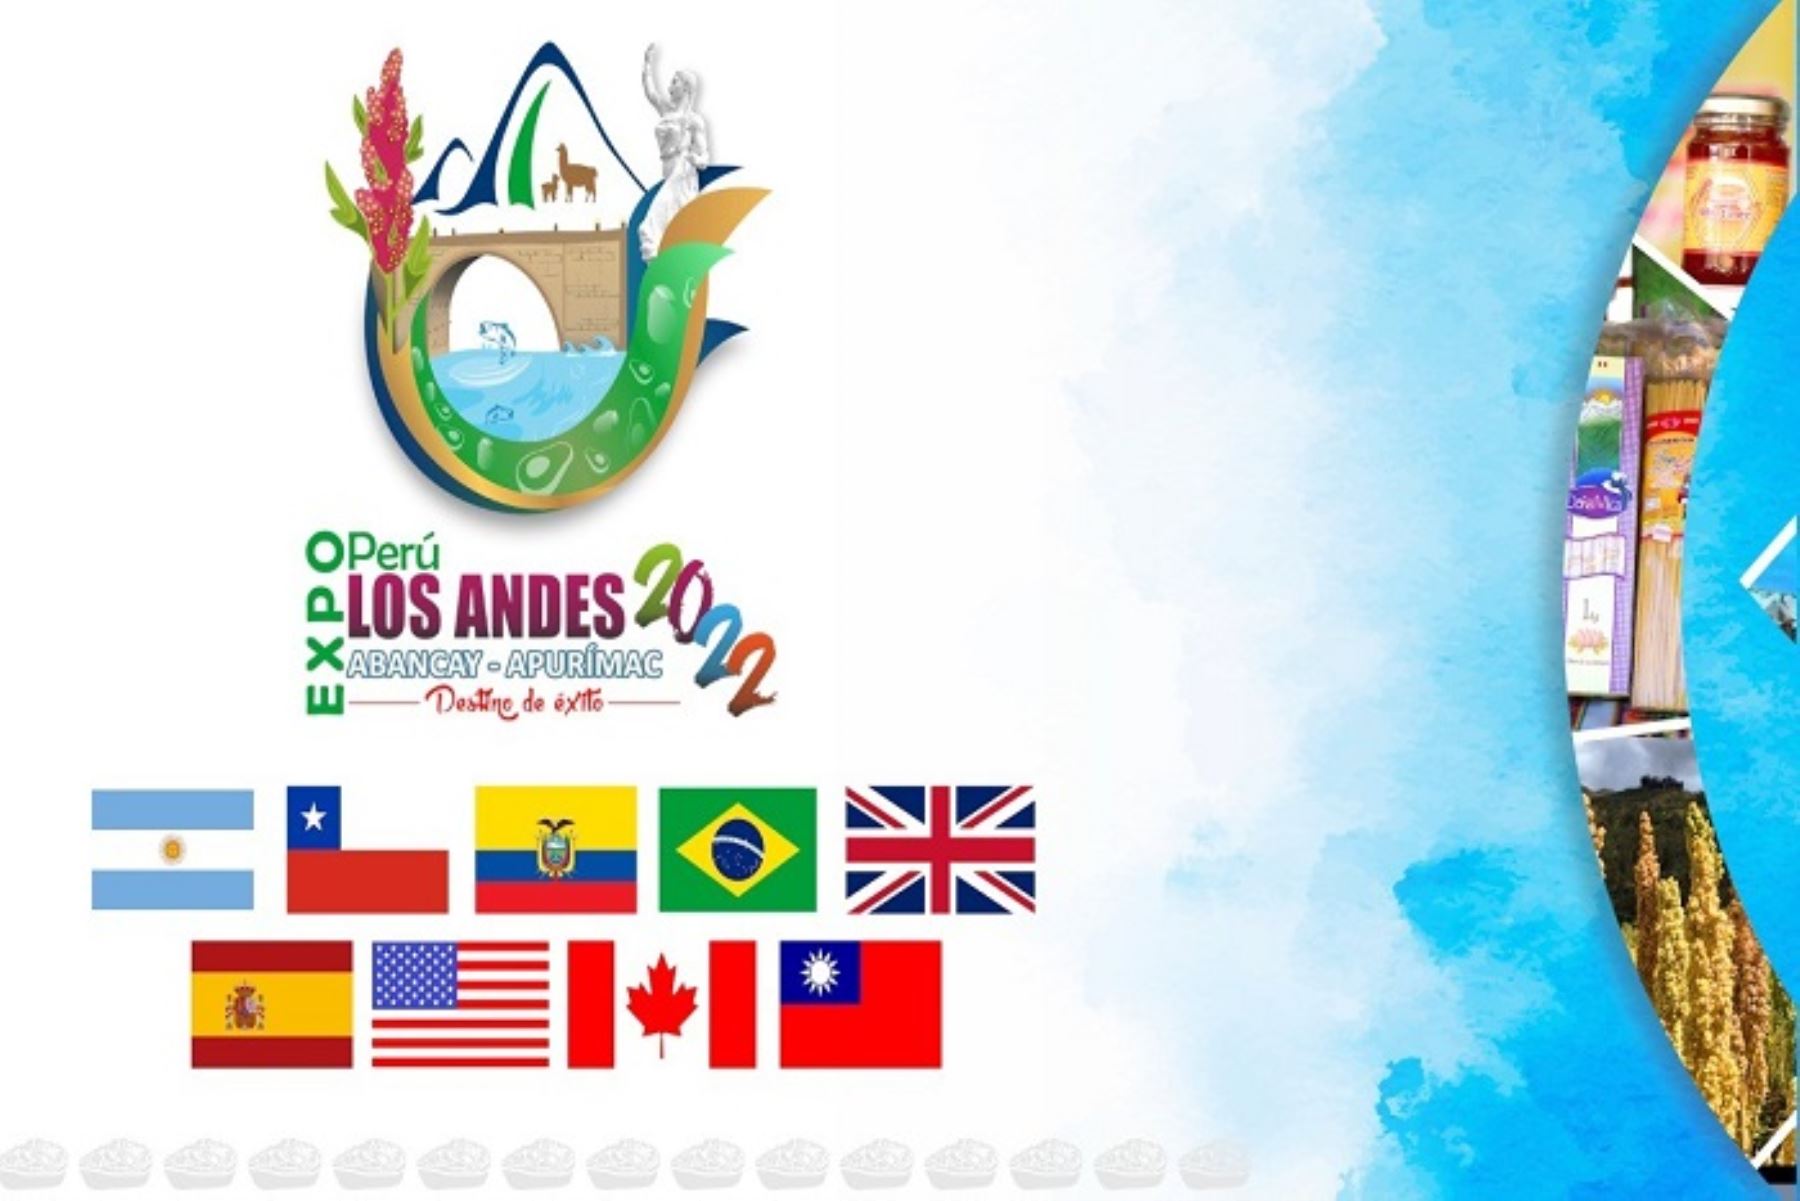 Expo Perú Los Andes espera recibir 20,000 visitantes y generar S/ 15 millones en negocios